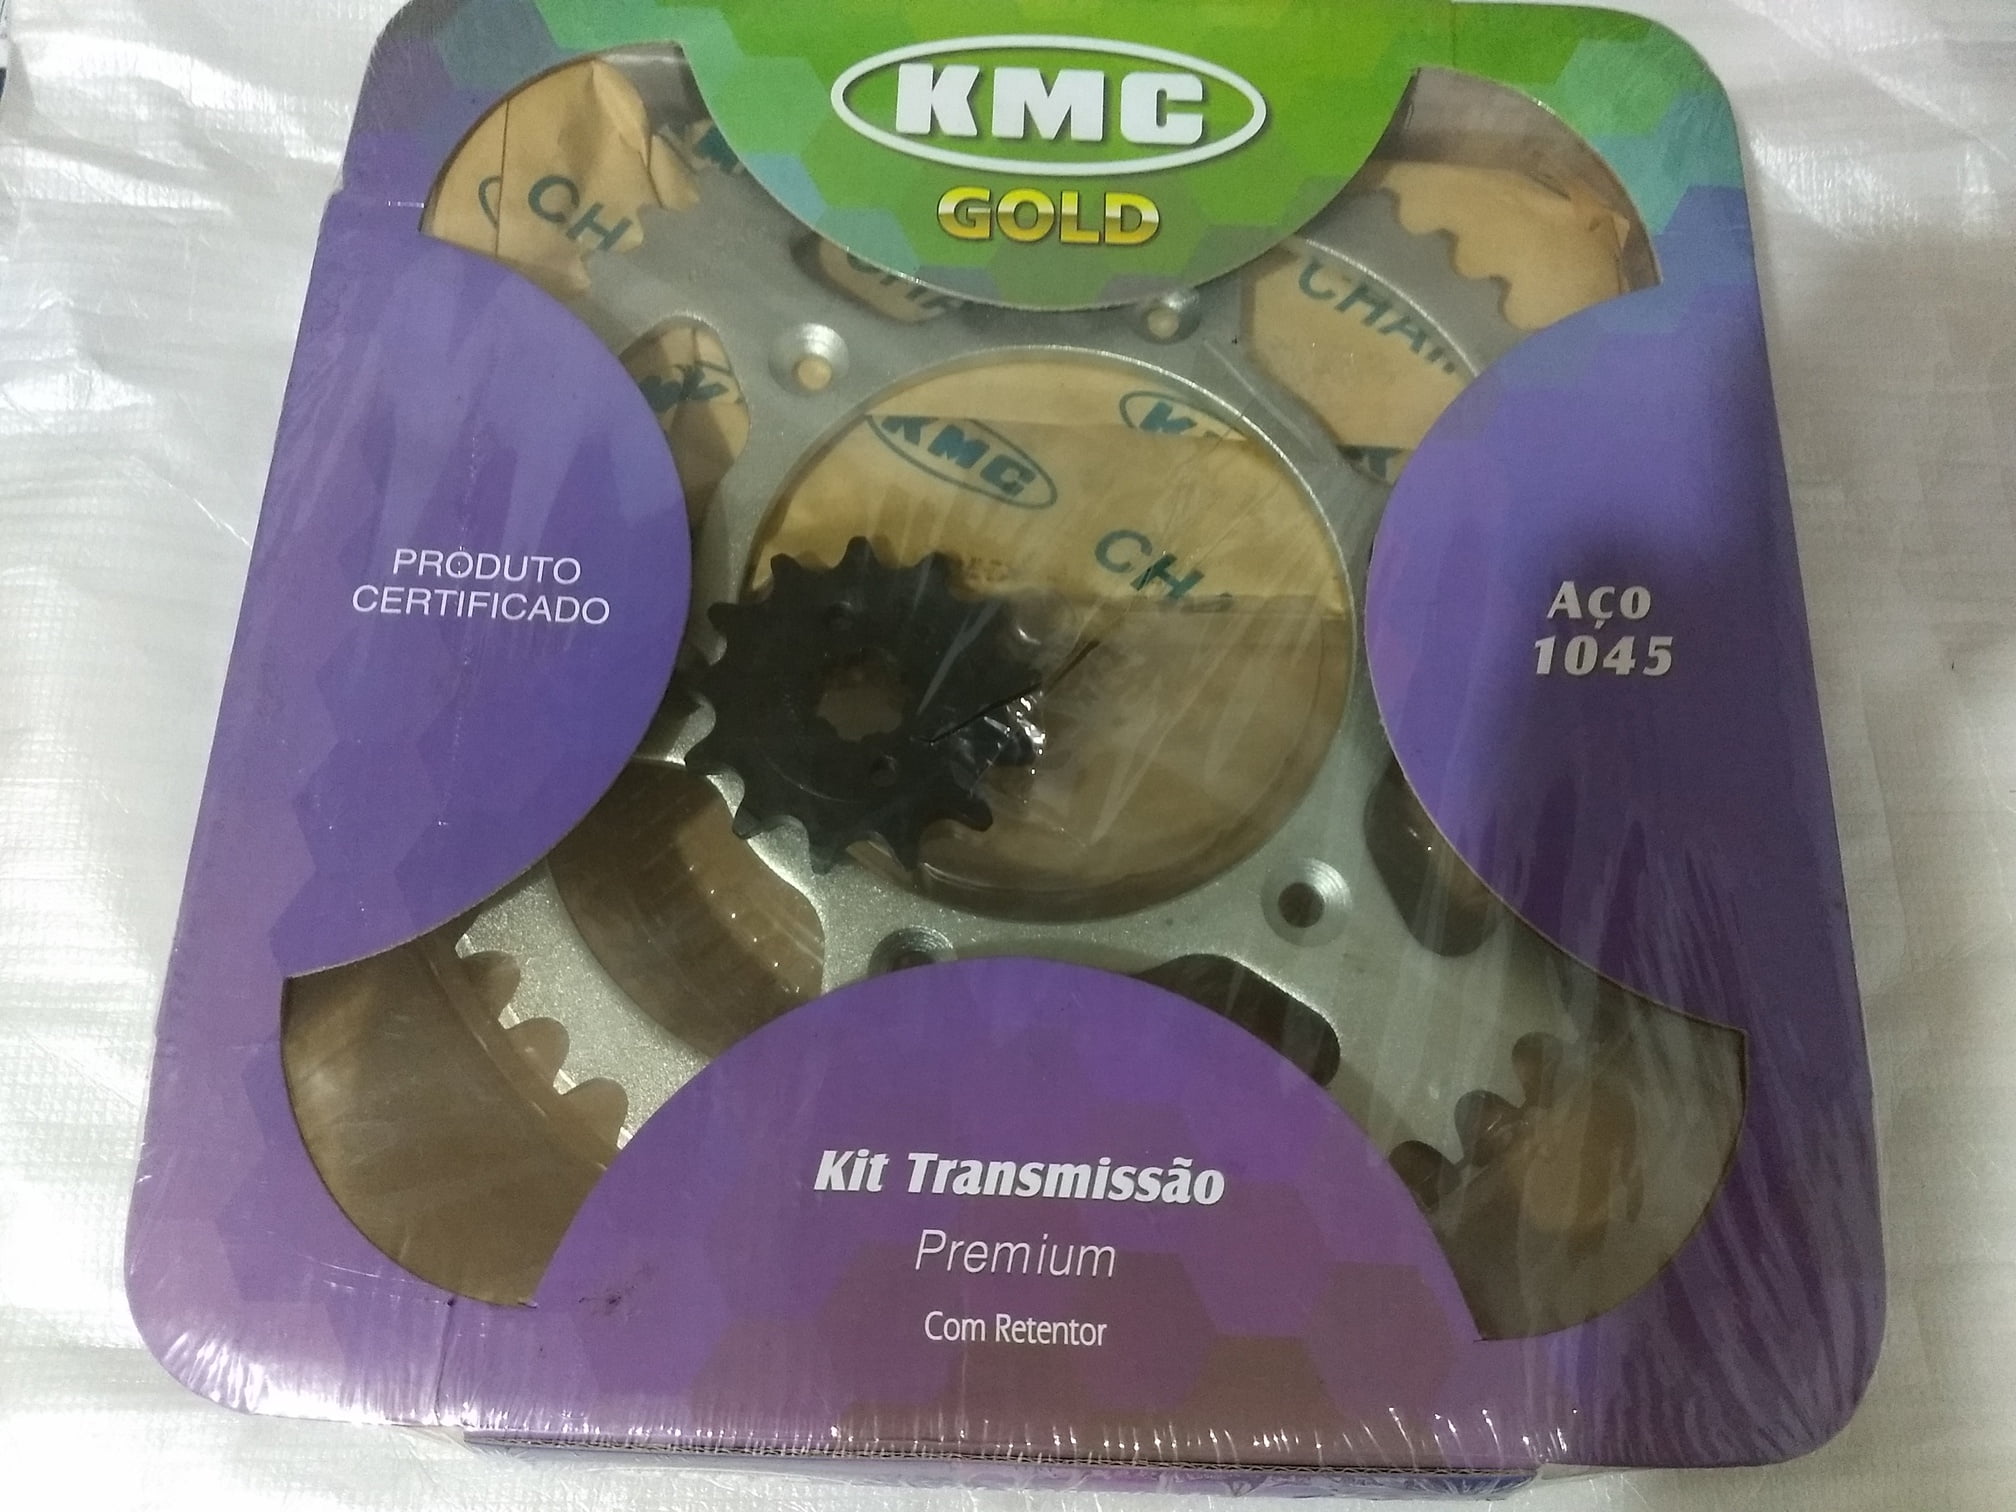 KIT TRANSMISSÃO CRF 230 KMC GOLD COM RETENTOR